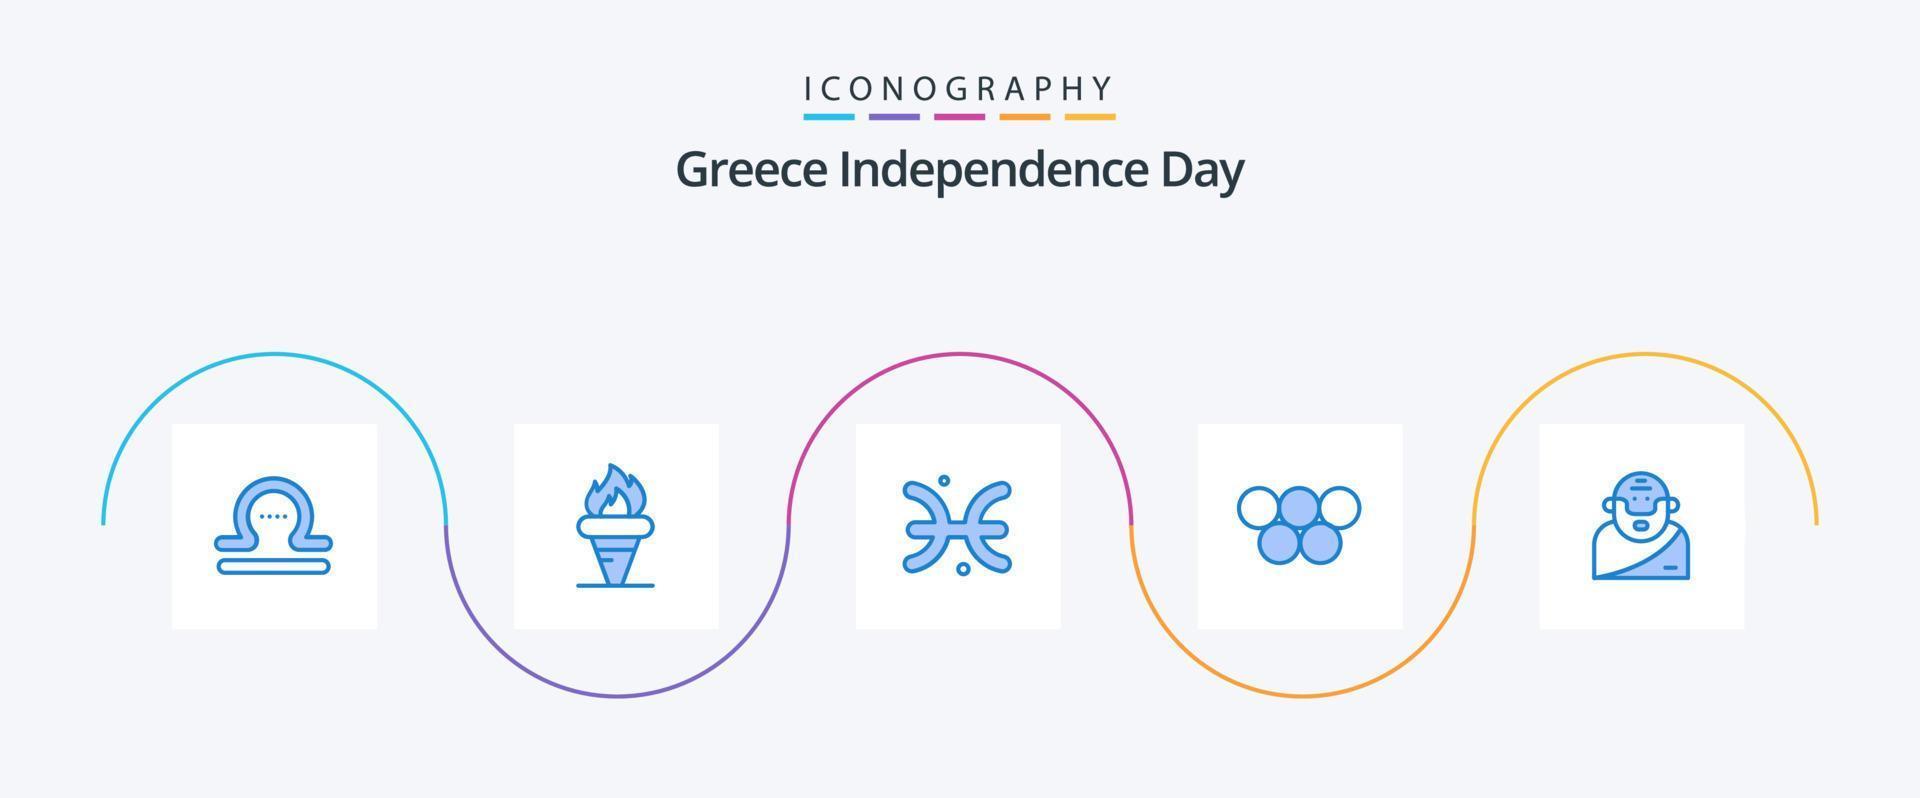 Griechenland Unabhängigkeitstag blau 5 Icon Pack inklusive Gott. griechisch. olympisch. Griechenland. Griechenland vektor